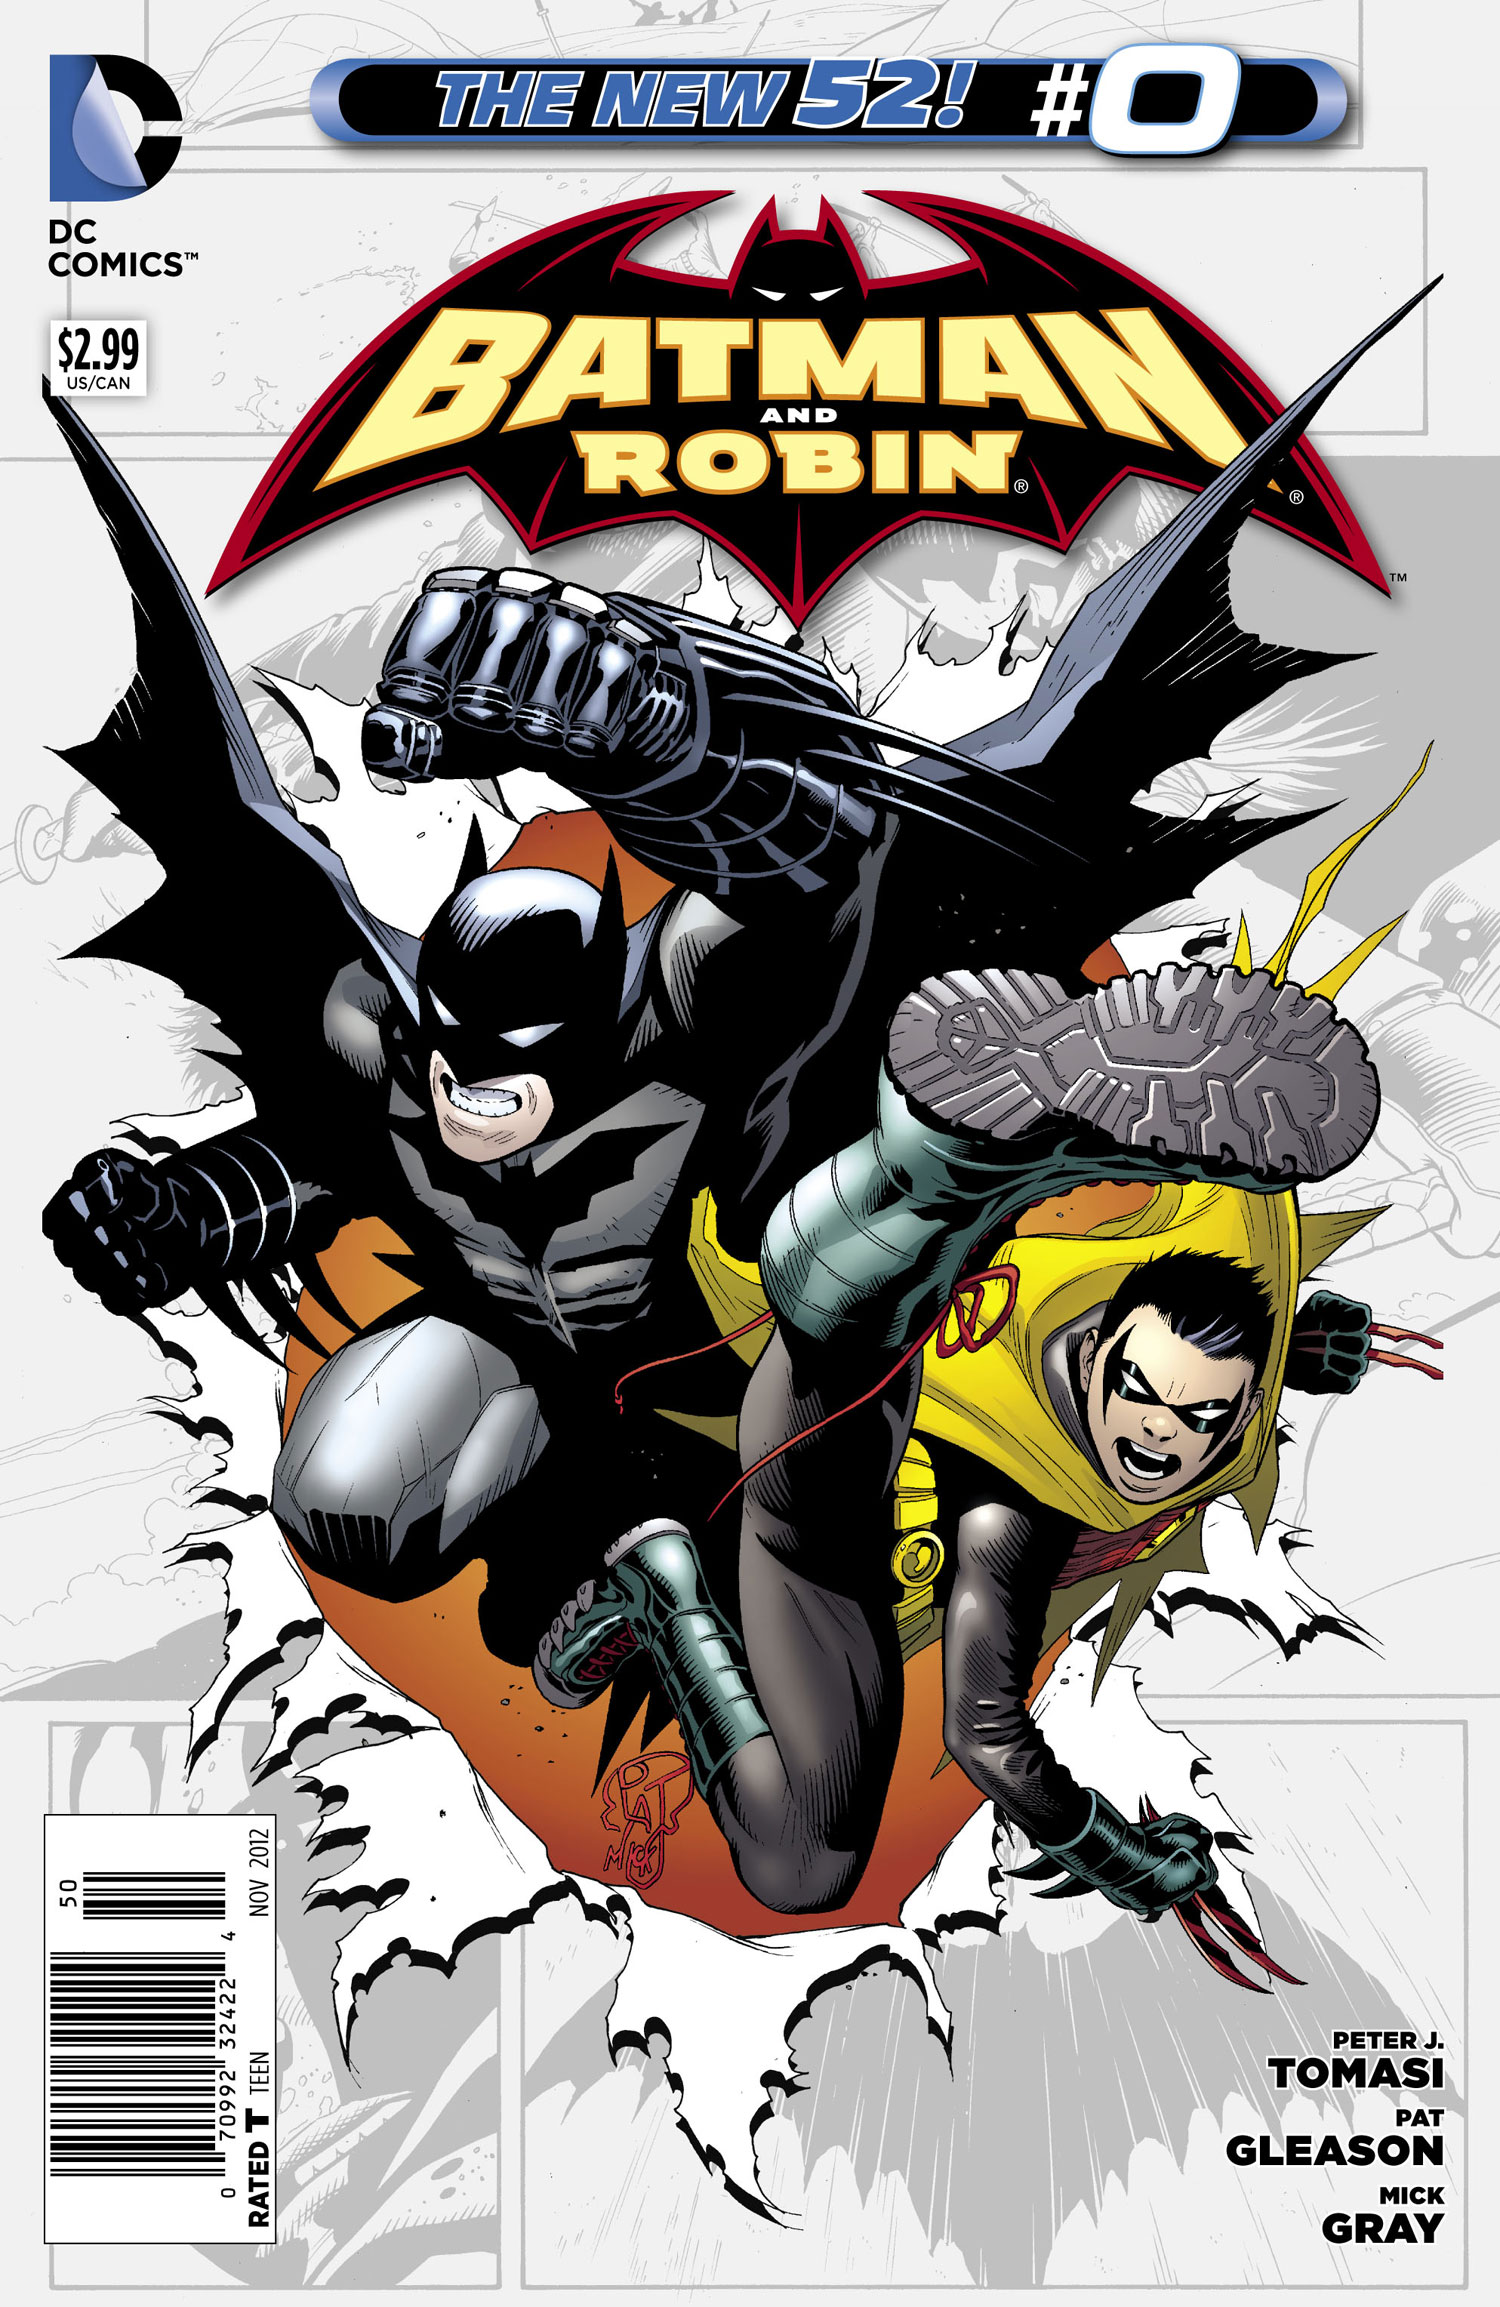 Batman and Robin Vol. 2 #0